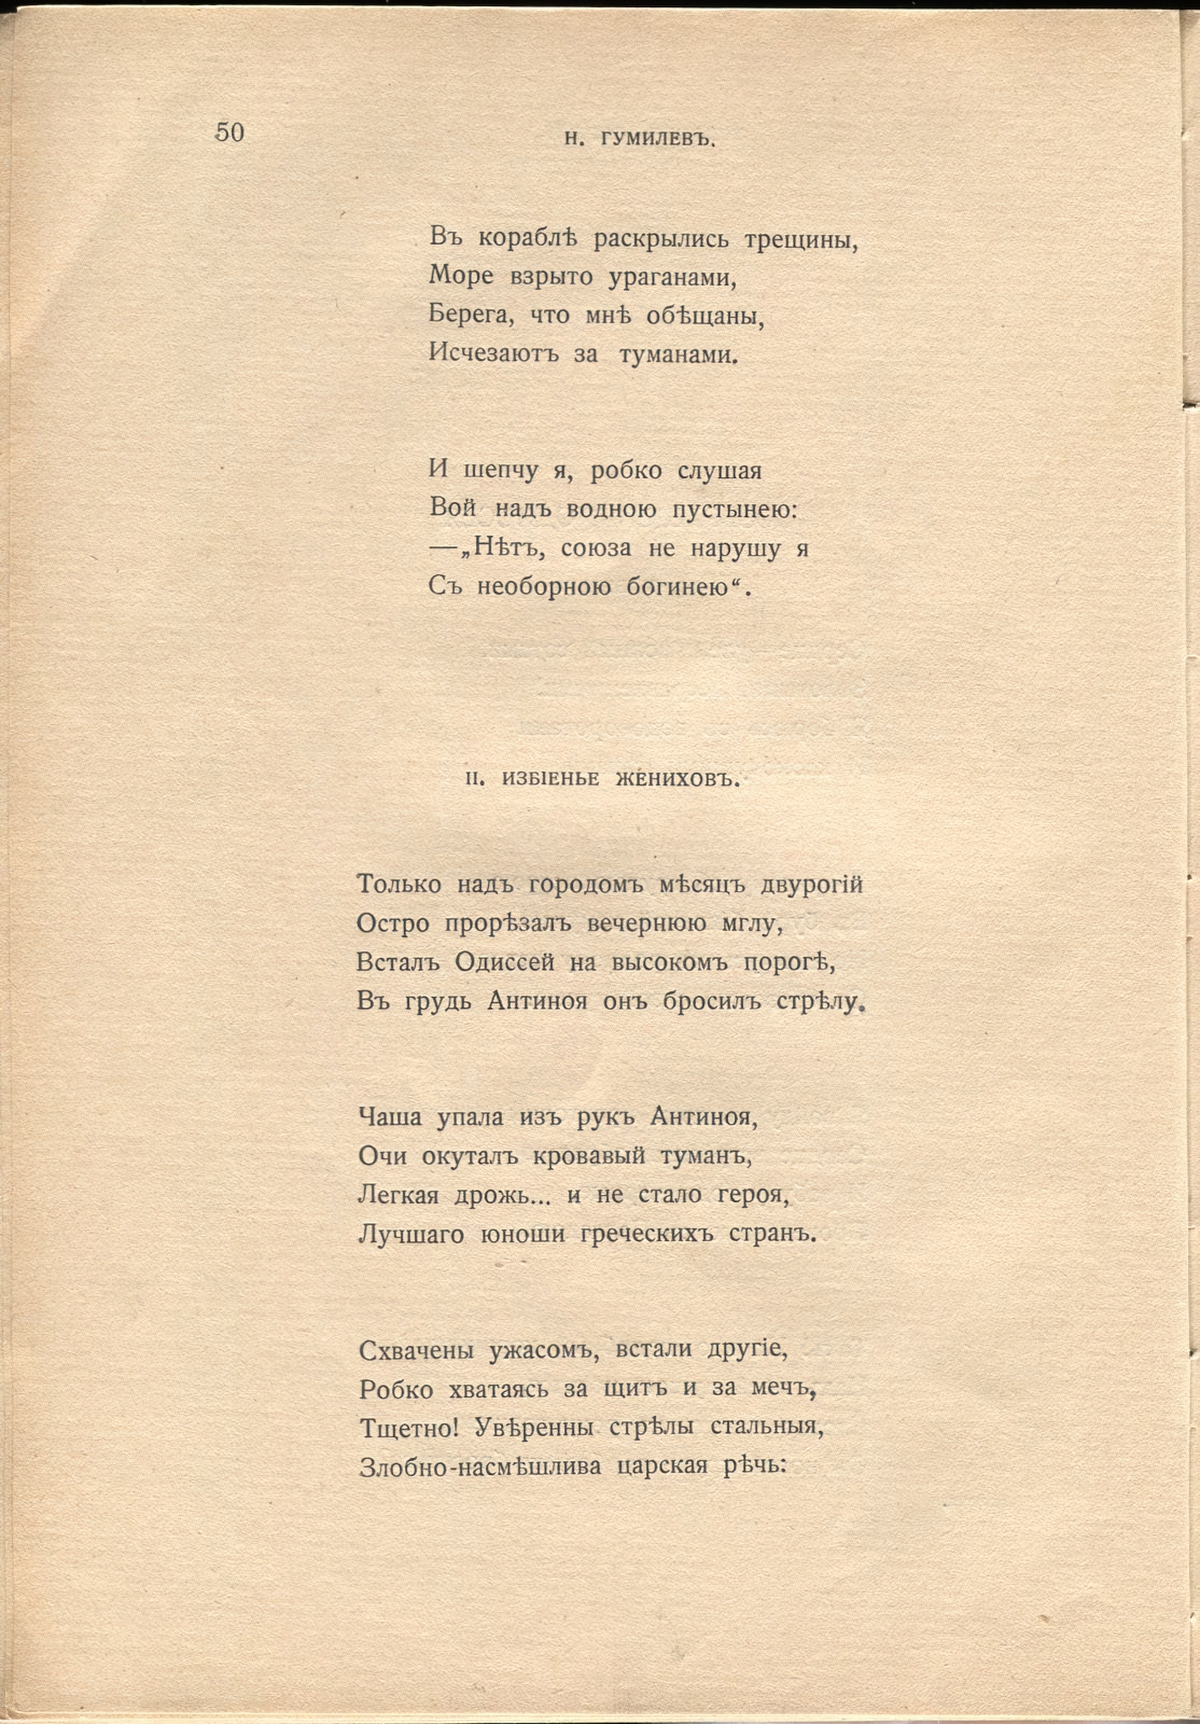 Жемчуга (1910). «Избиение женихов». Страница 50